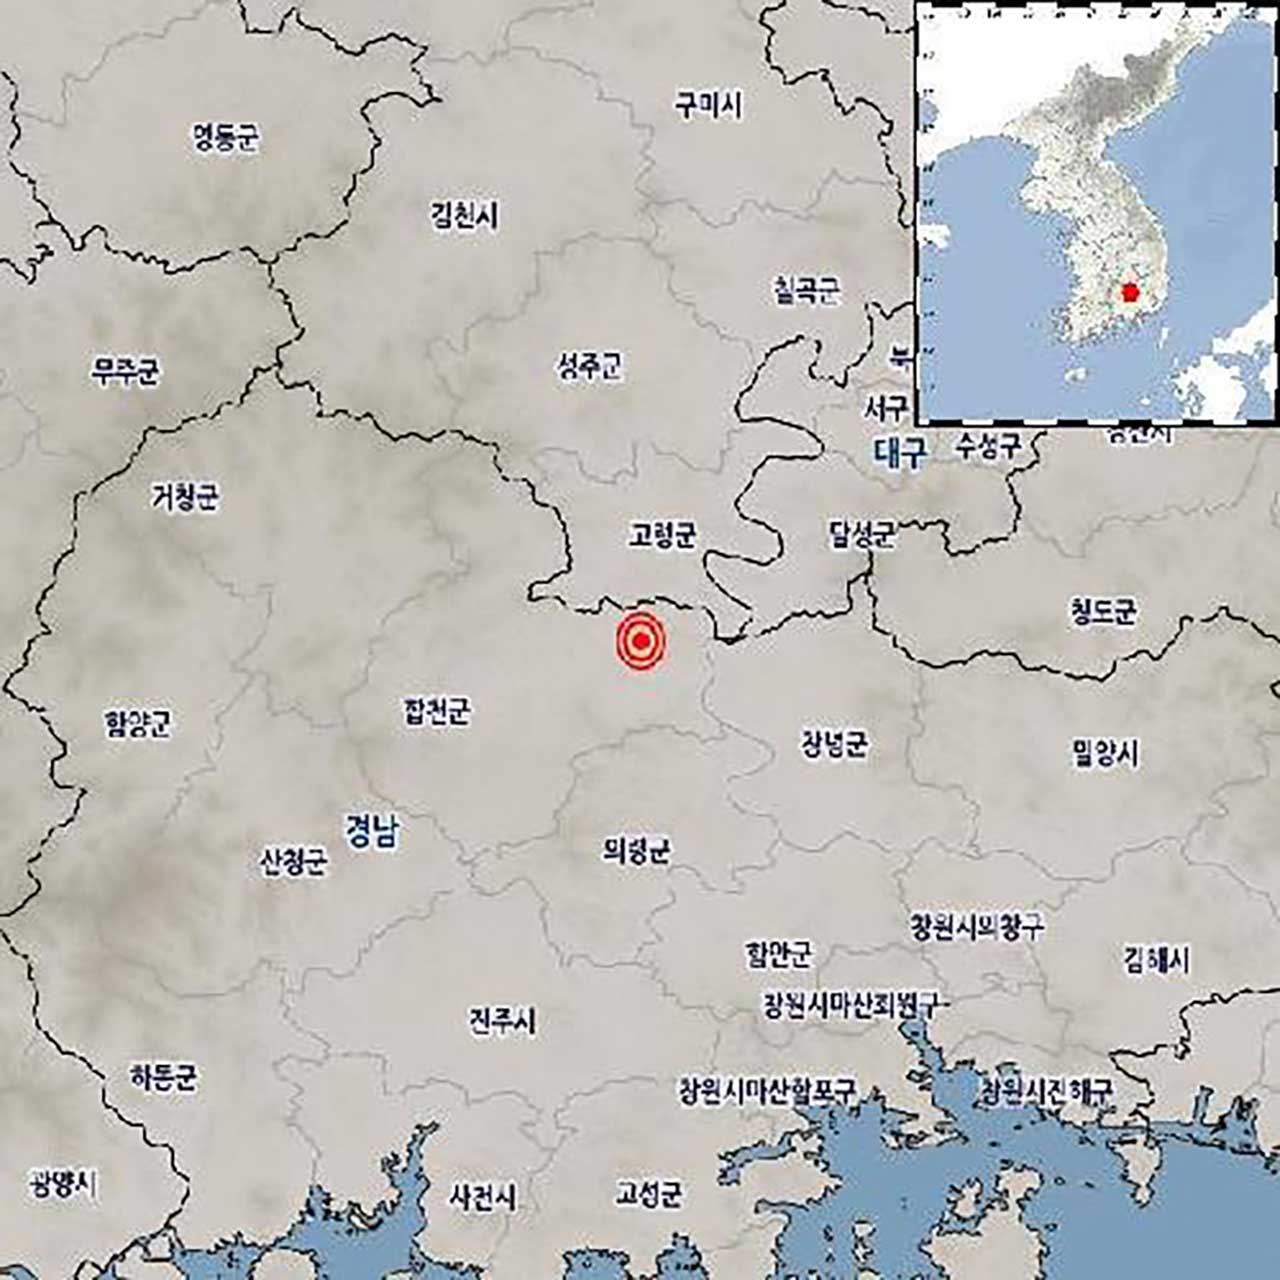 경남 합천 동북동쪽서 규모 2.2 지진 발생